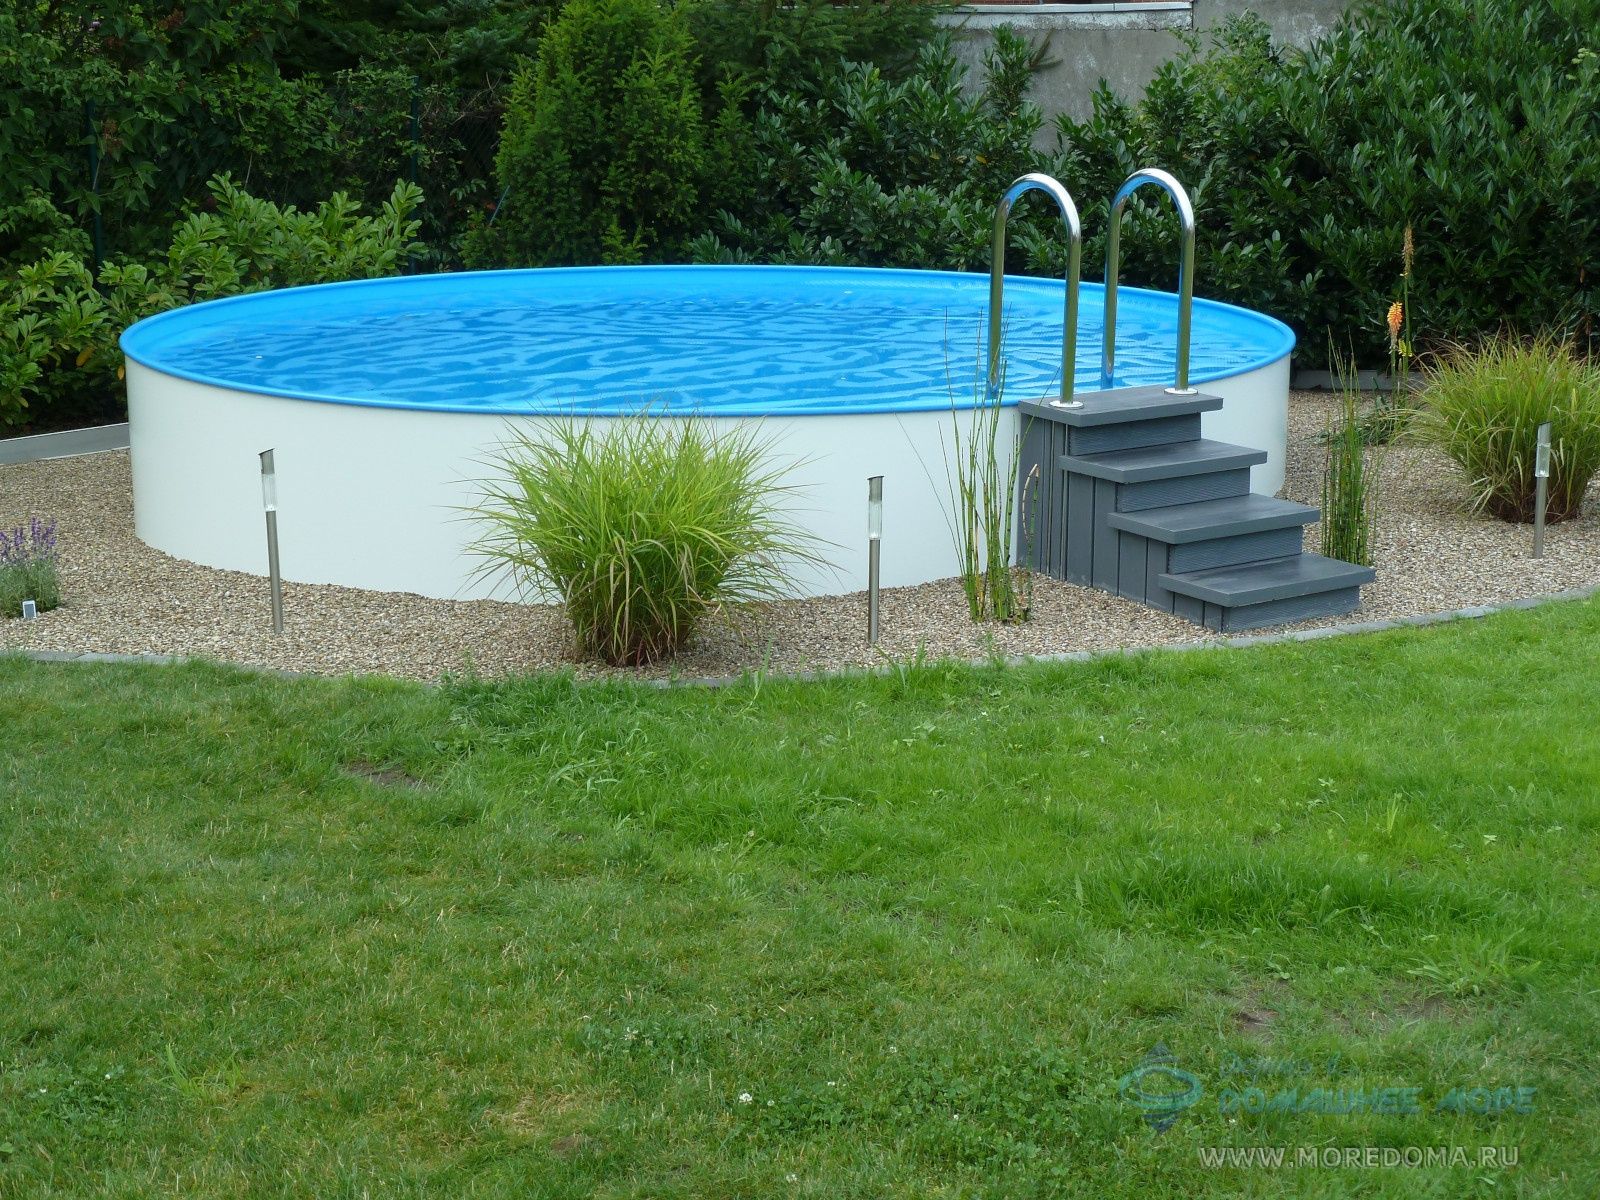 501010128-KB Каркасный бассейн Summer Fun (круг) 3.5 х 1.2 м ; артикул 501010128-KB диаметр 3.5 высота 1.2  